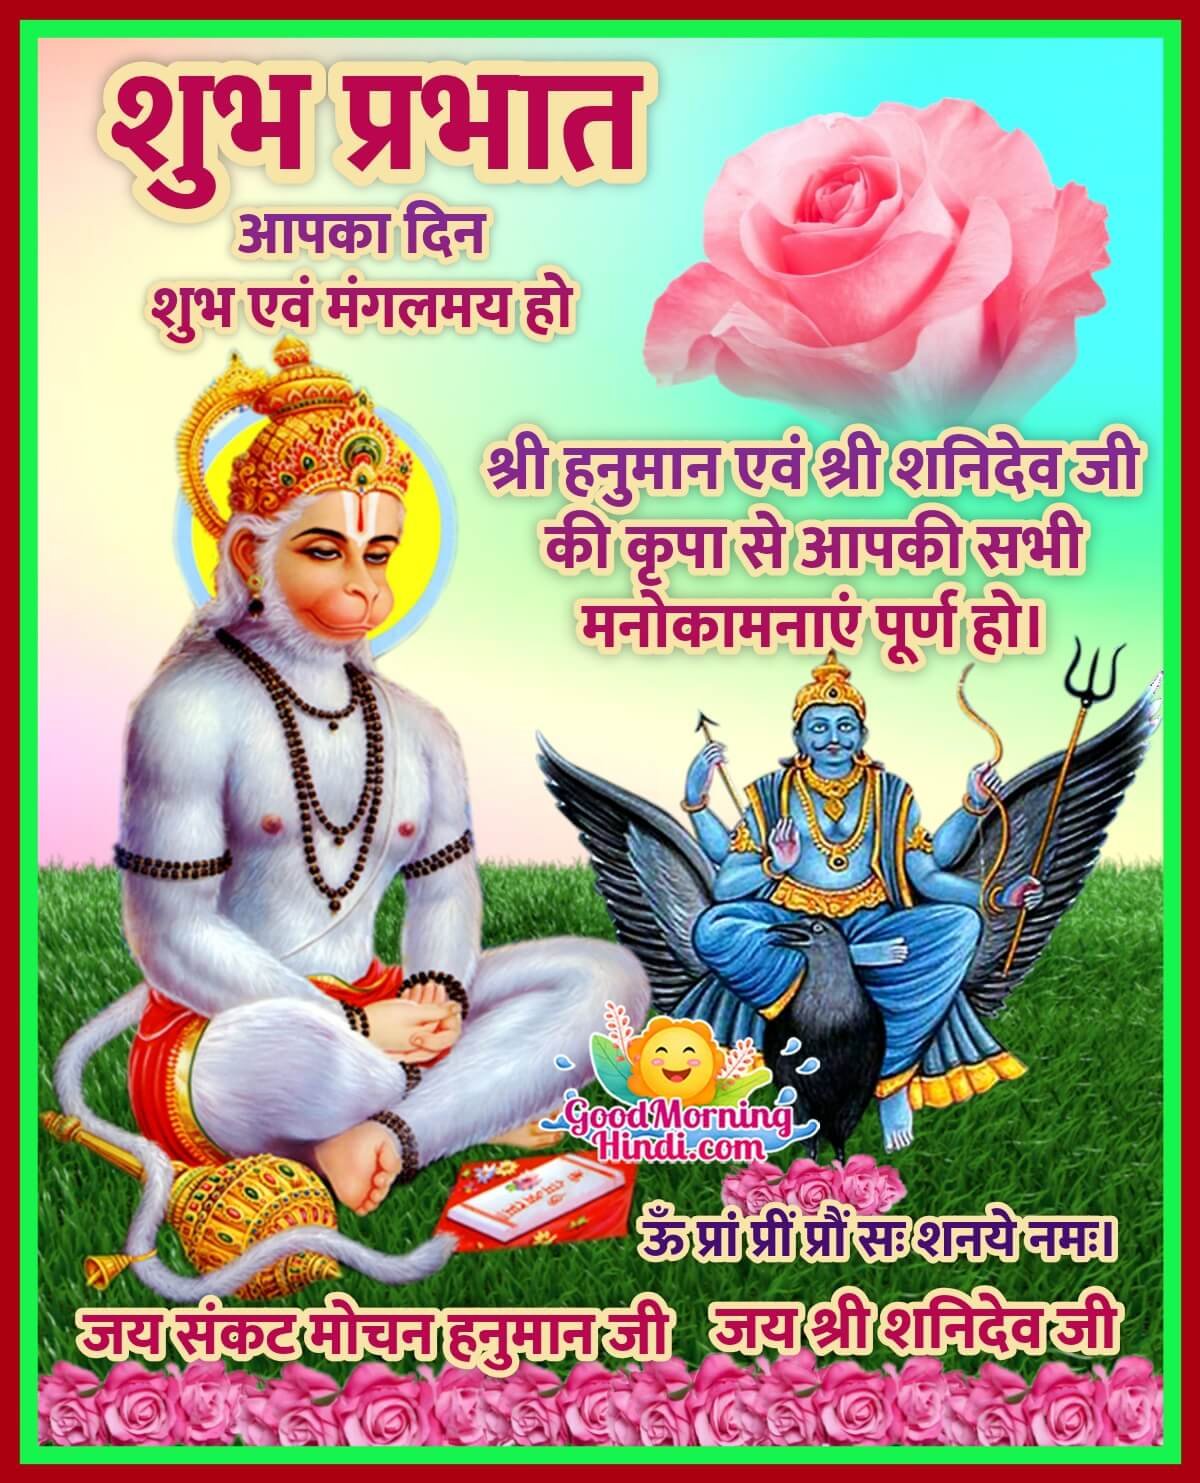 Good Morning Hindu God Images In Hindi Good Morning Wishes Images In Hindi